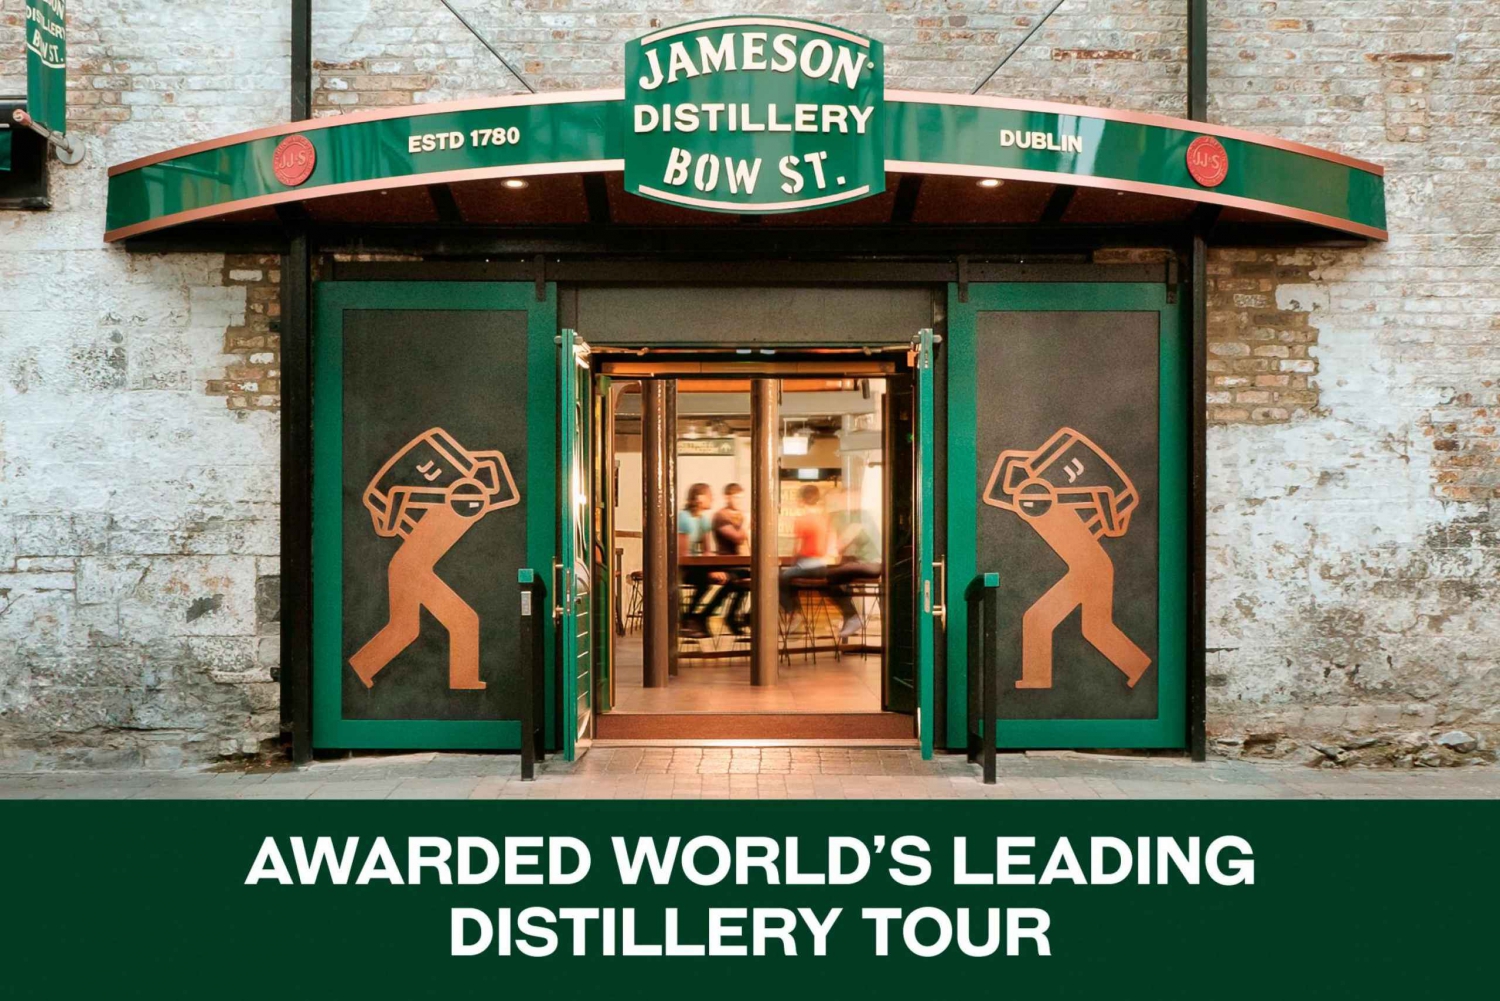 Dublin: Omvisning på Jameson Whiskey-destilleriet med smaksprøver